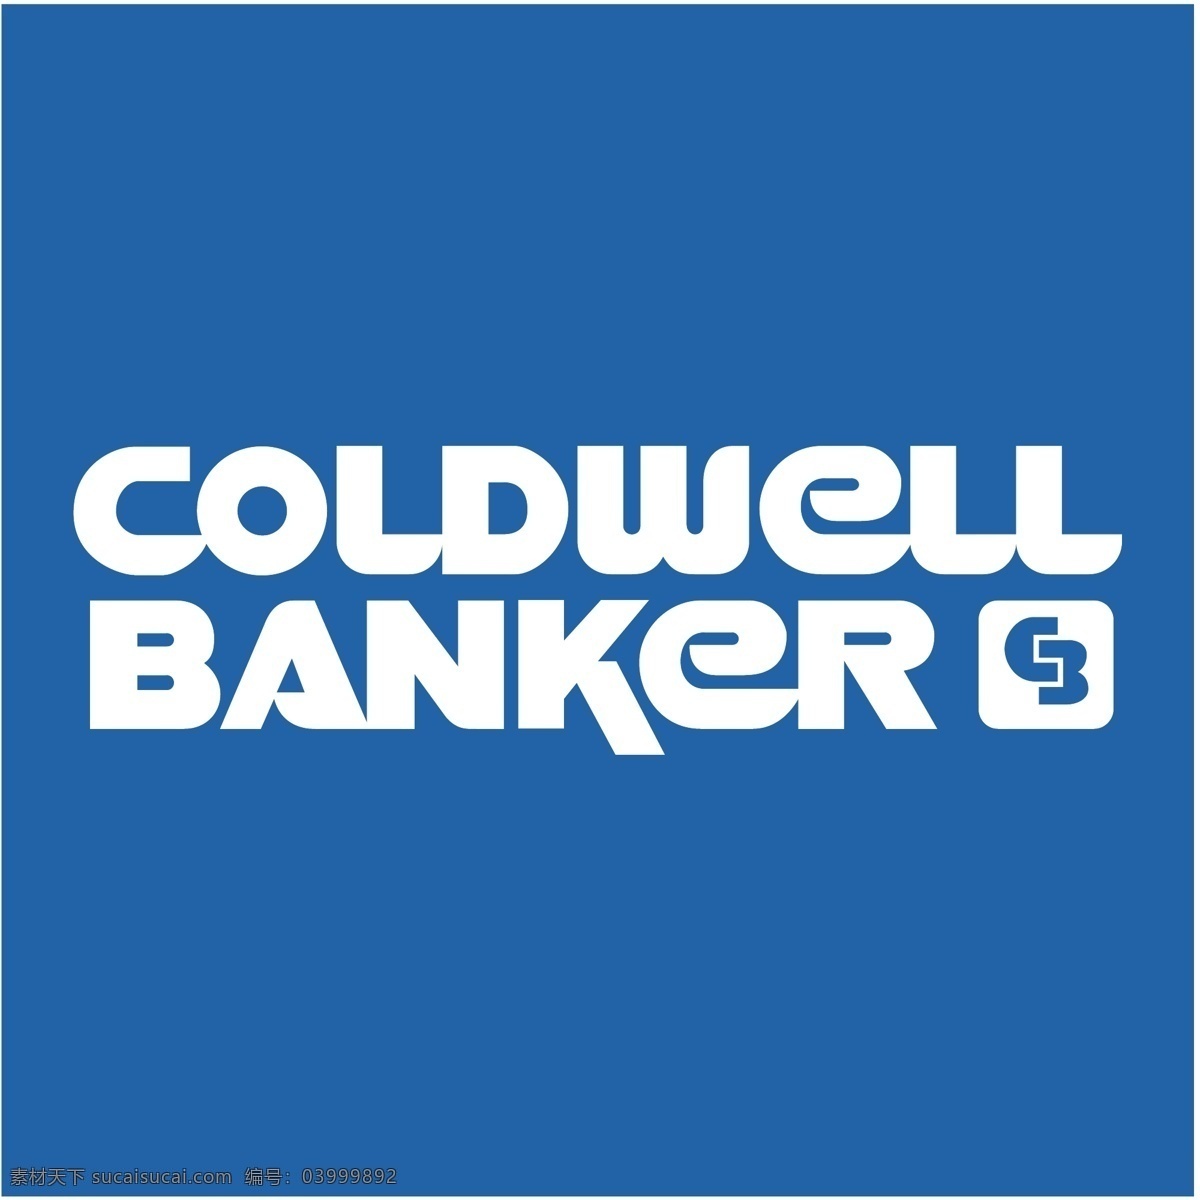 信义房产0 coldwell 银行家 banker 矢量 标志 eps标识 免费 使用 银行 标识 矢量图 建筑家居